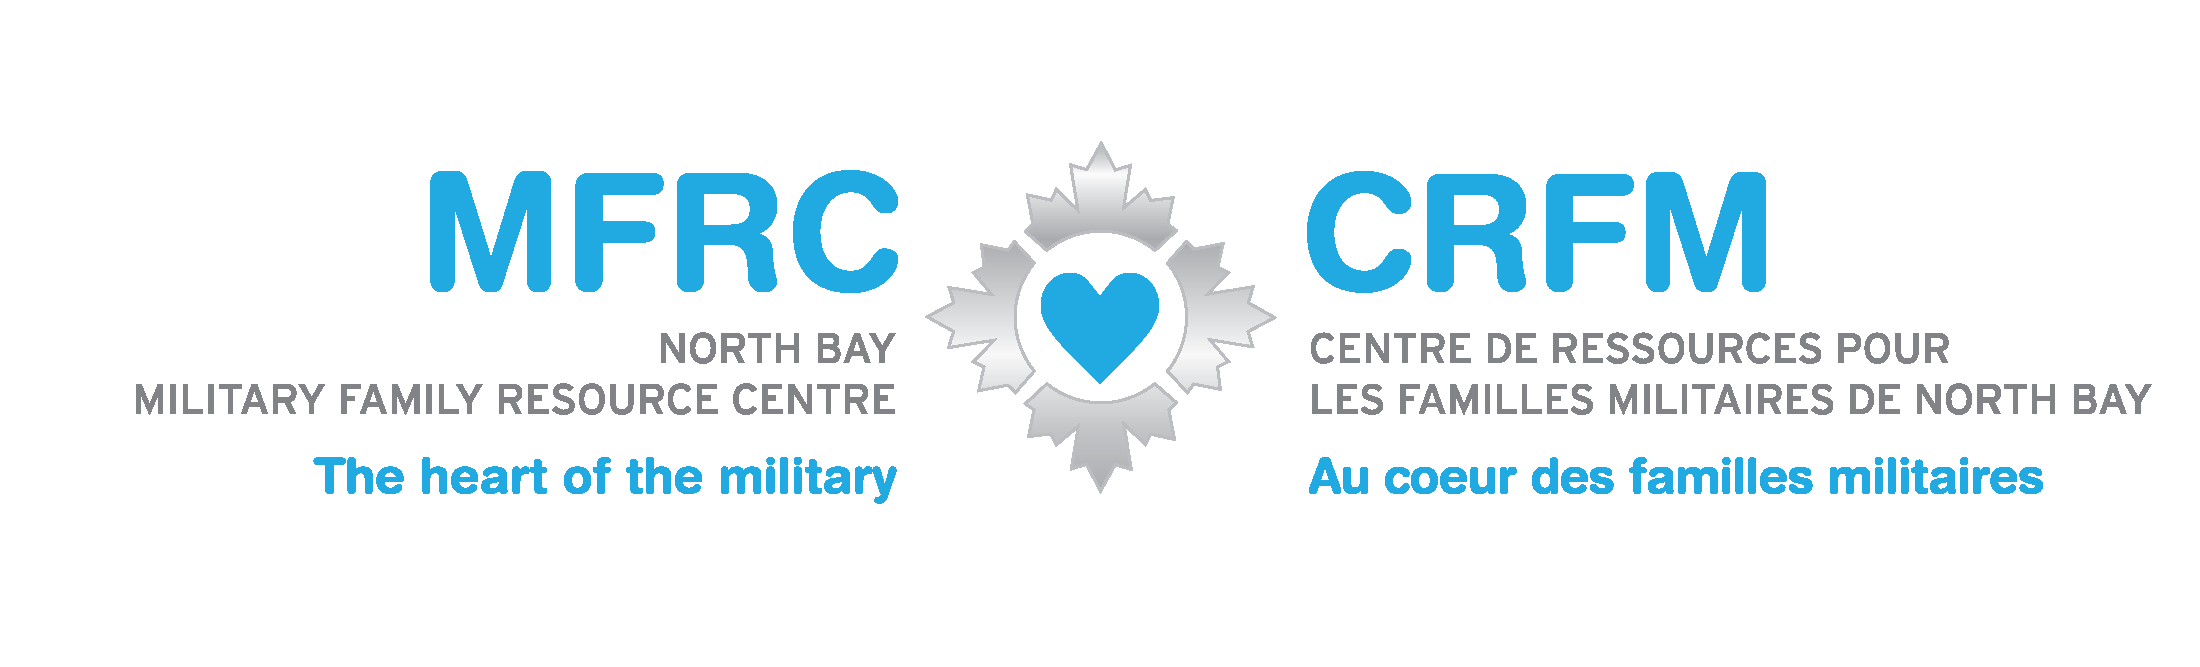 MFRC North Bay Military Family Resource Centre The Heart of the Military / CFRM Centre de ressources pour les familles militaires de North Bay Au coeur des familles militaires